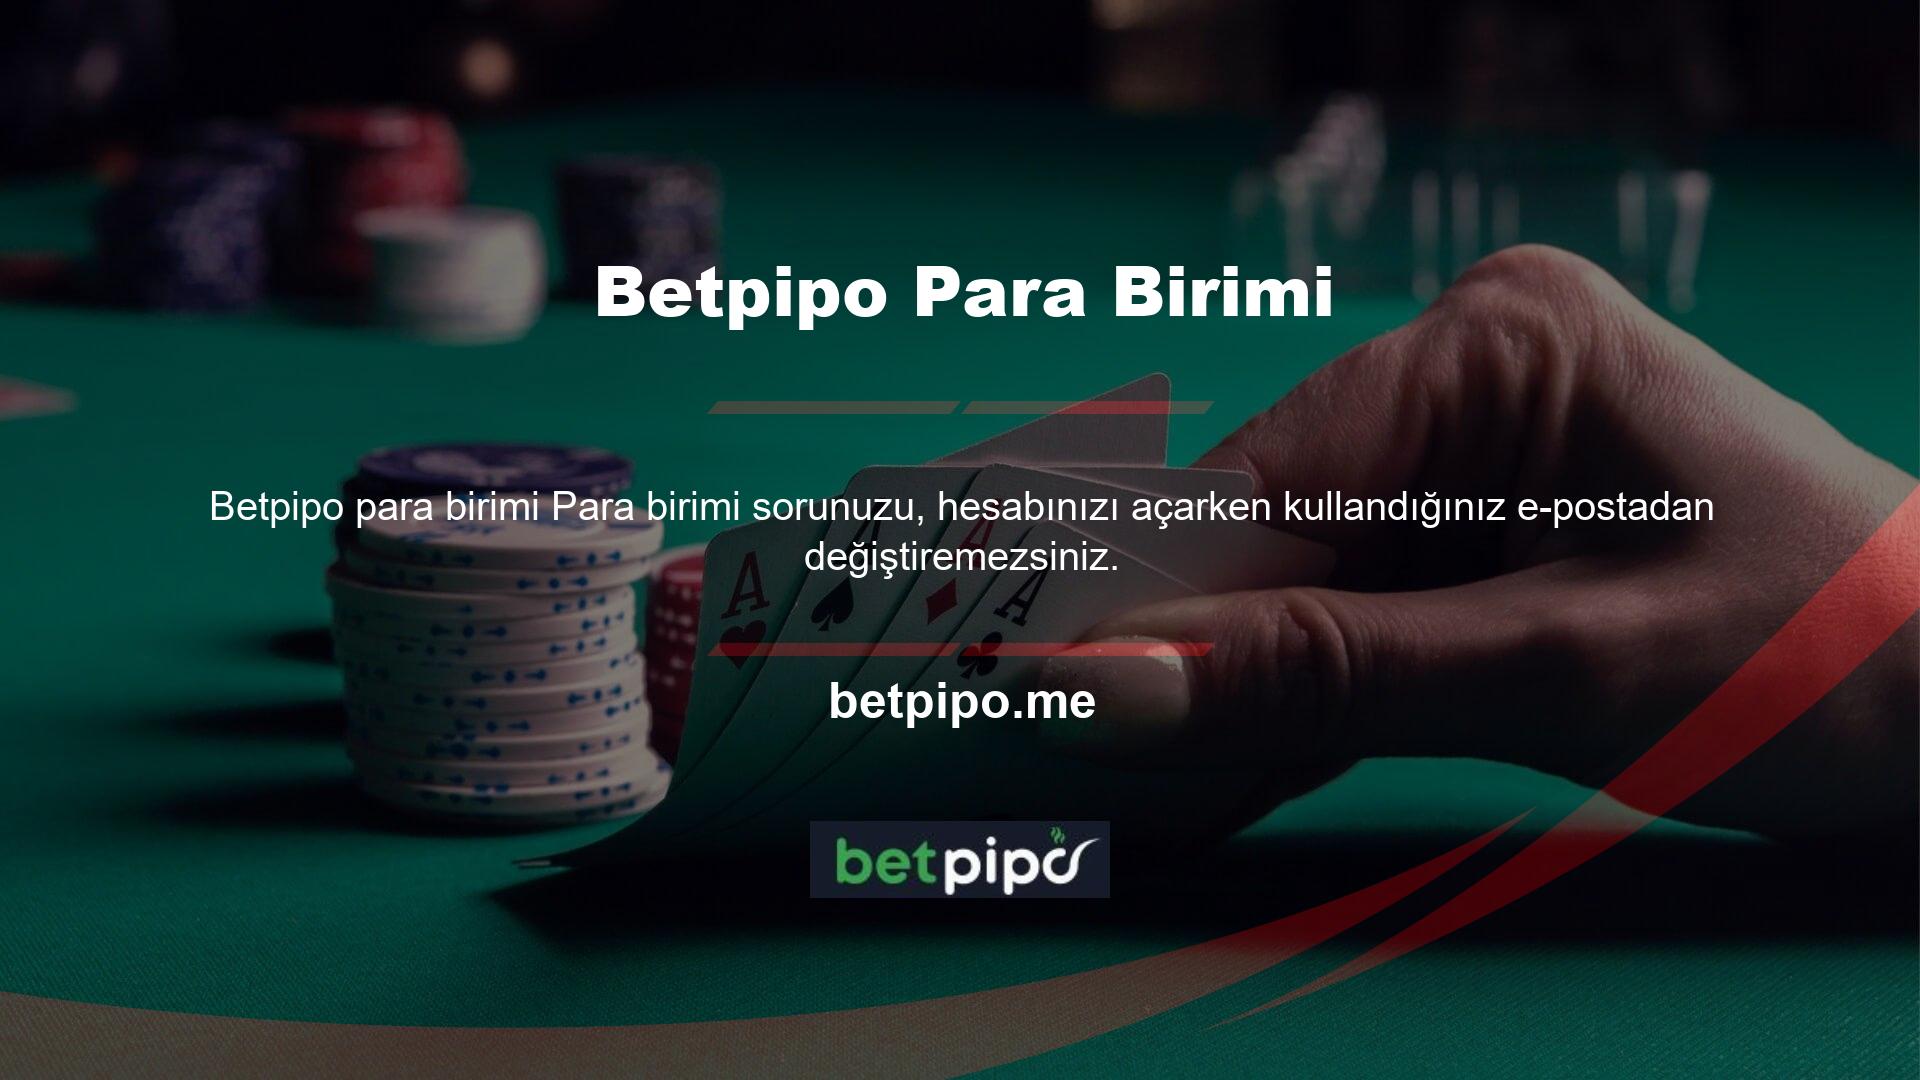 Betpipo para birimi bozdurulabilir mi sorusuna cevaben üye bilgisi veya üye profili bulunmamaktadır